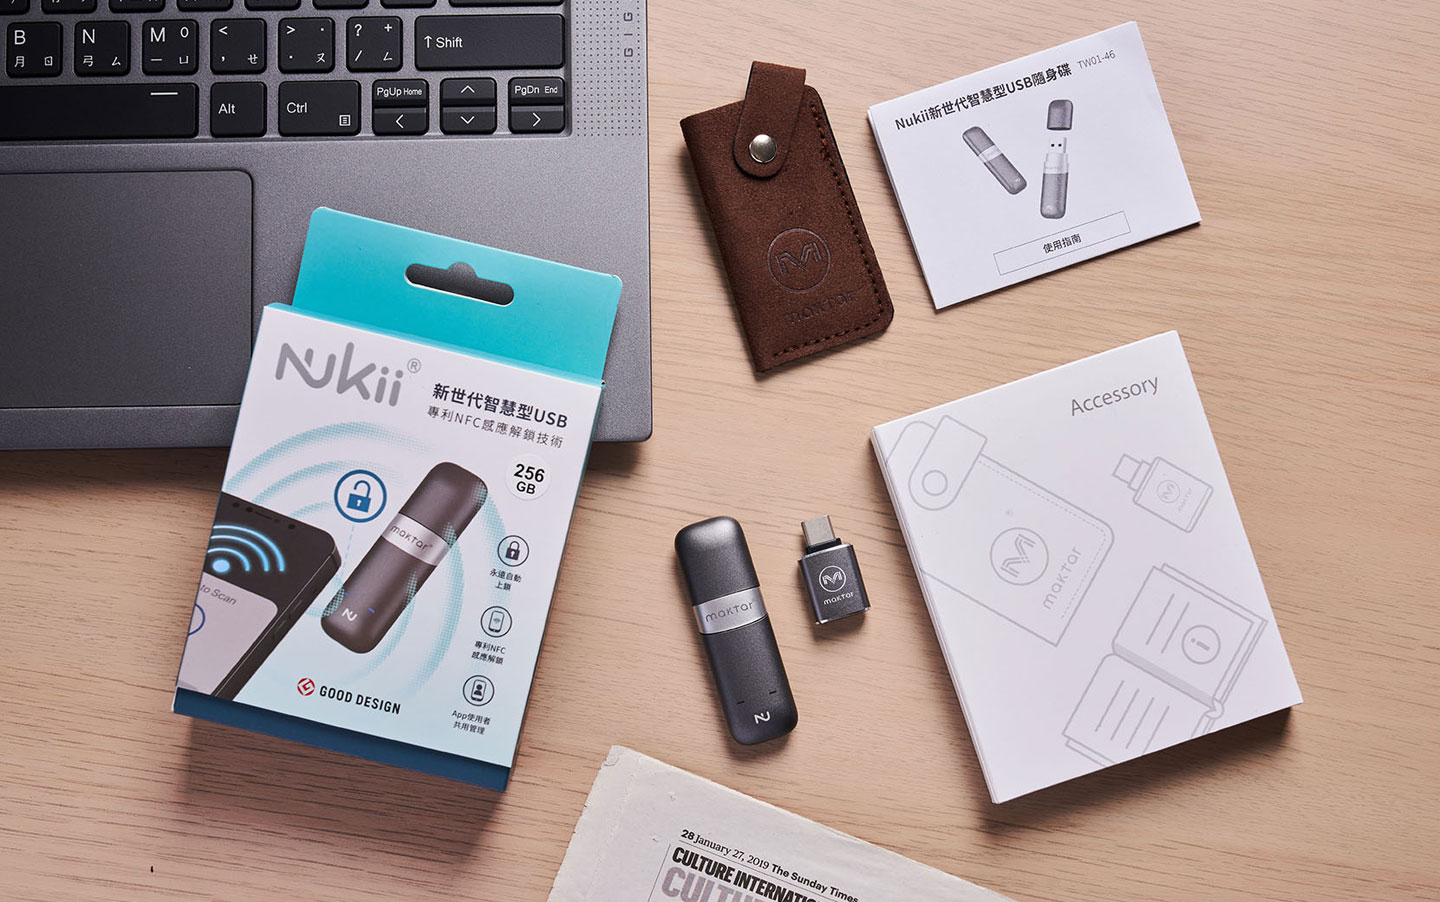  Nukii 新世代智慧型 USB 隨身碟的外盒包裝與內容物一覽，除了隨身碟本體，更隨附完整配件盒，包括 USB Type-A 轉 Type-C 轉接、高質感皮革收納袋，另外也有文說明書。